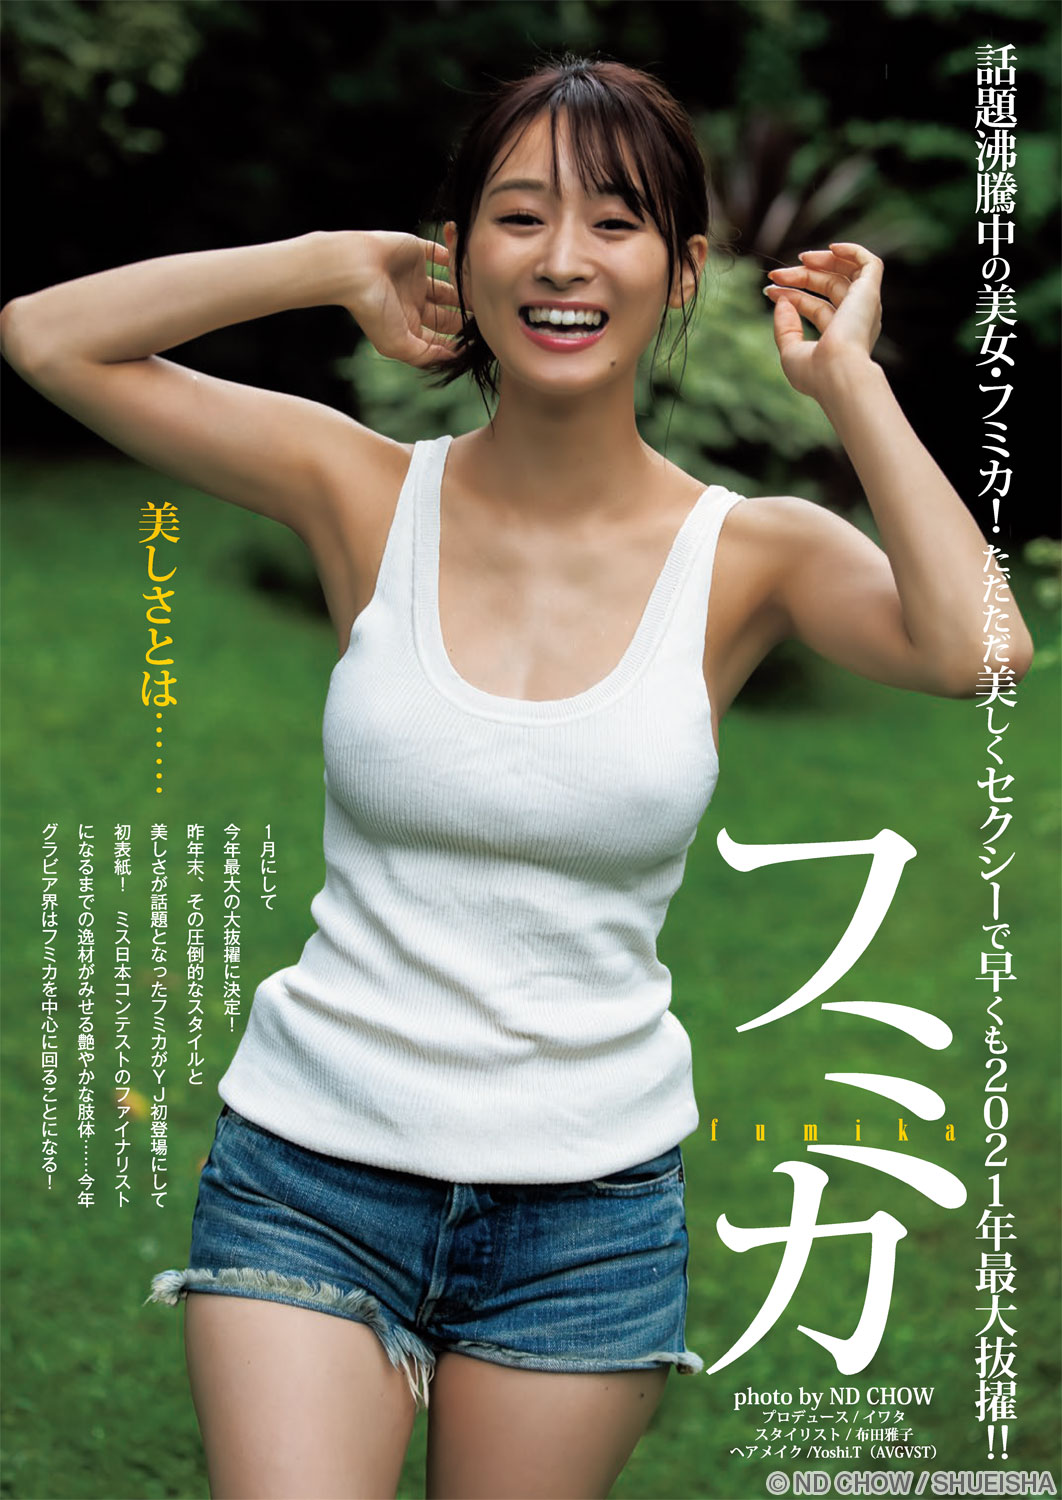 ほしのあき(星野亜希) グラビア切り抜き 週刊ヤングジャンプ 2006年4月 